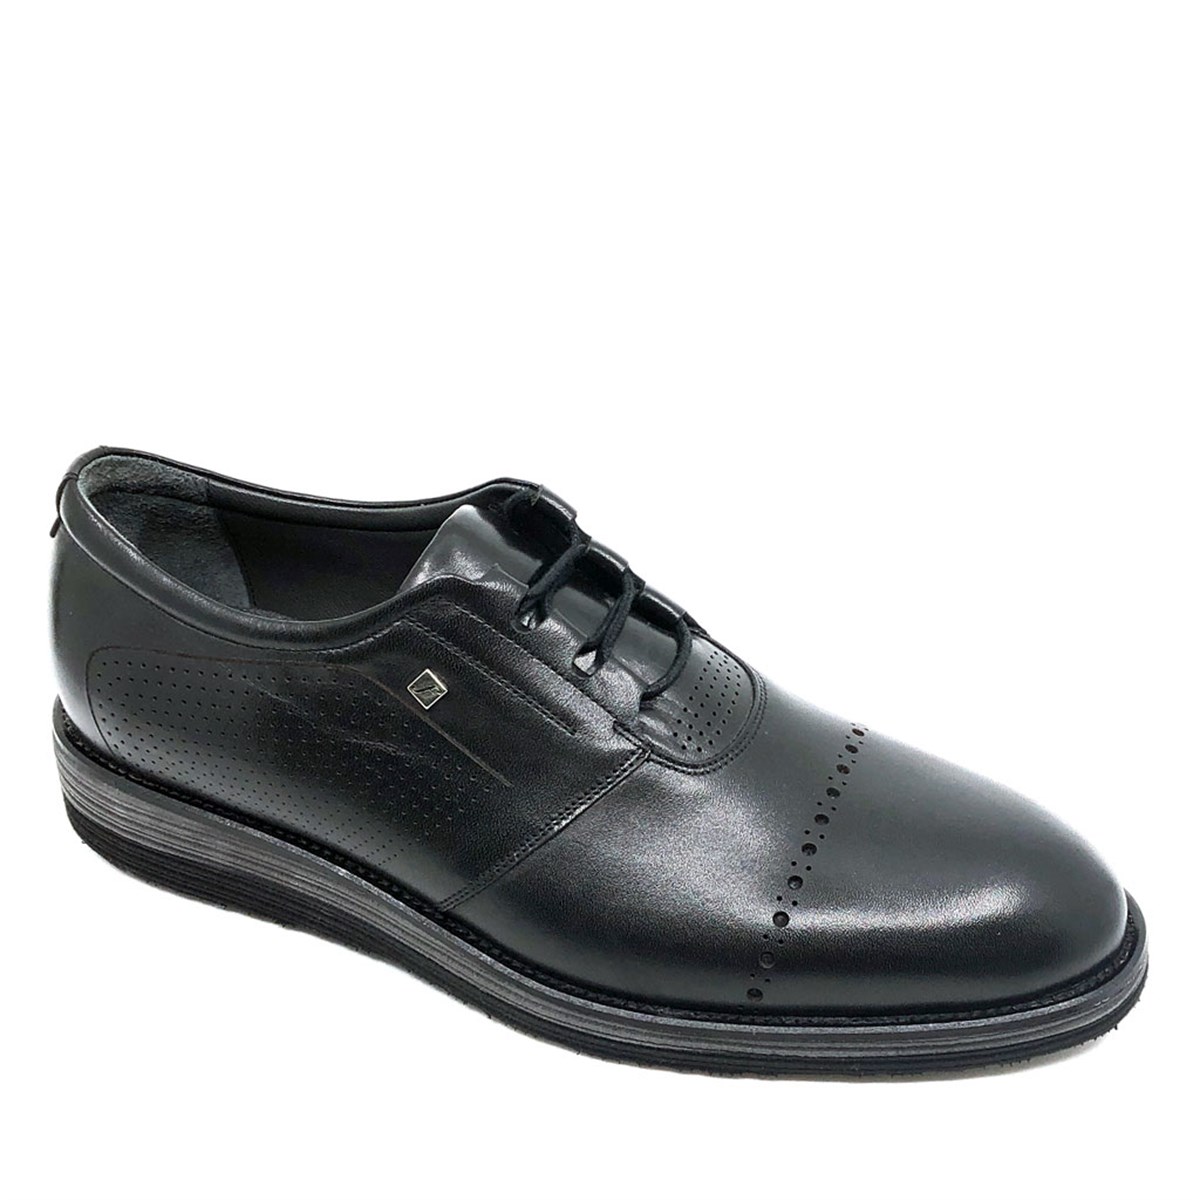 Erkek Hakiki Deri Siyah Hafif Eva Tabanlı Günlük Ayakkabı, Renk: Siyah, Beden: 39